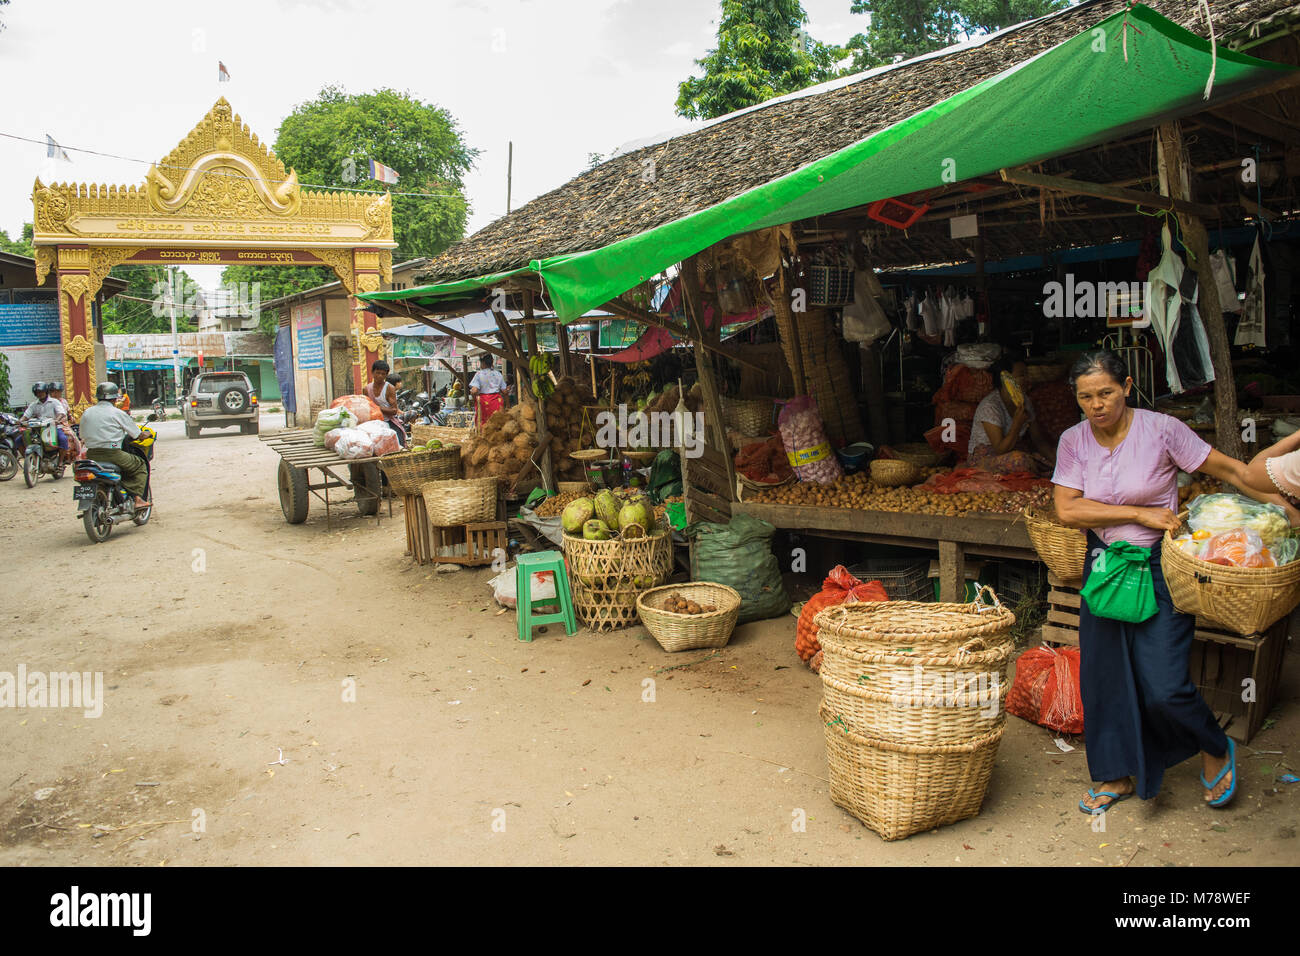 Die BURMESISCHE asiatischen Markt Nyaung U in der Nähe von Bagan, Myanmar. Marktstand verkaufen Obst, Gemüse und Nüsse Frau, die ihr Zuckerrohr Korb zu Burma. Stockfoto